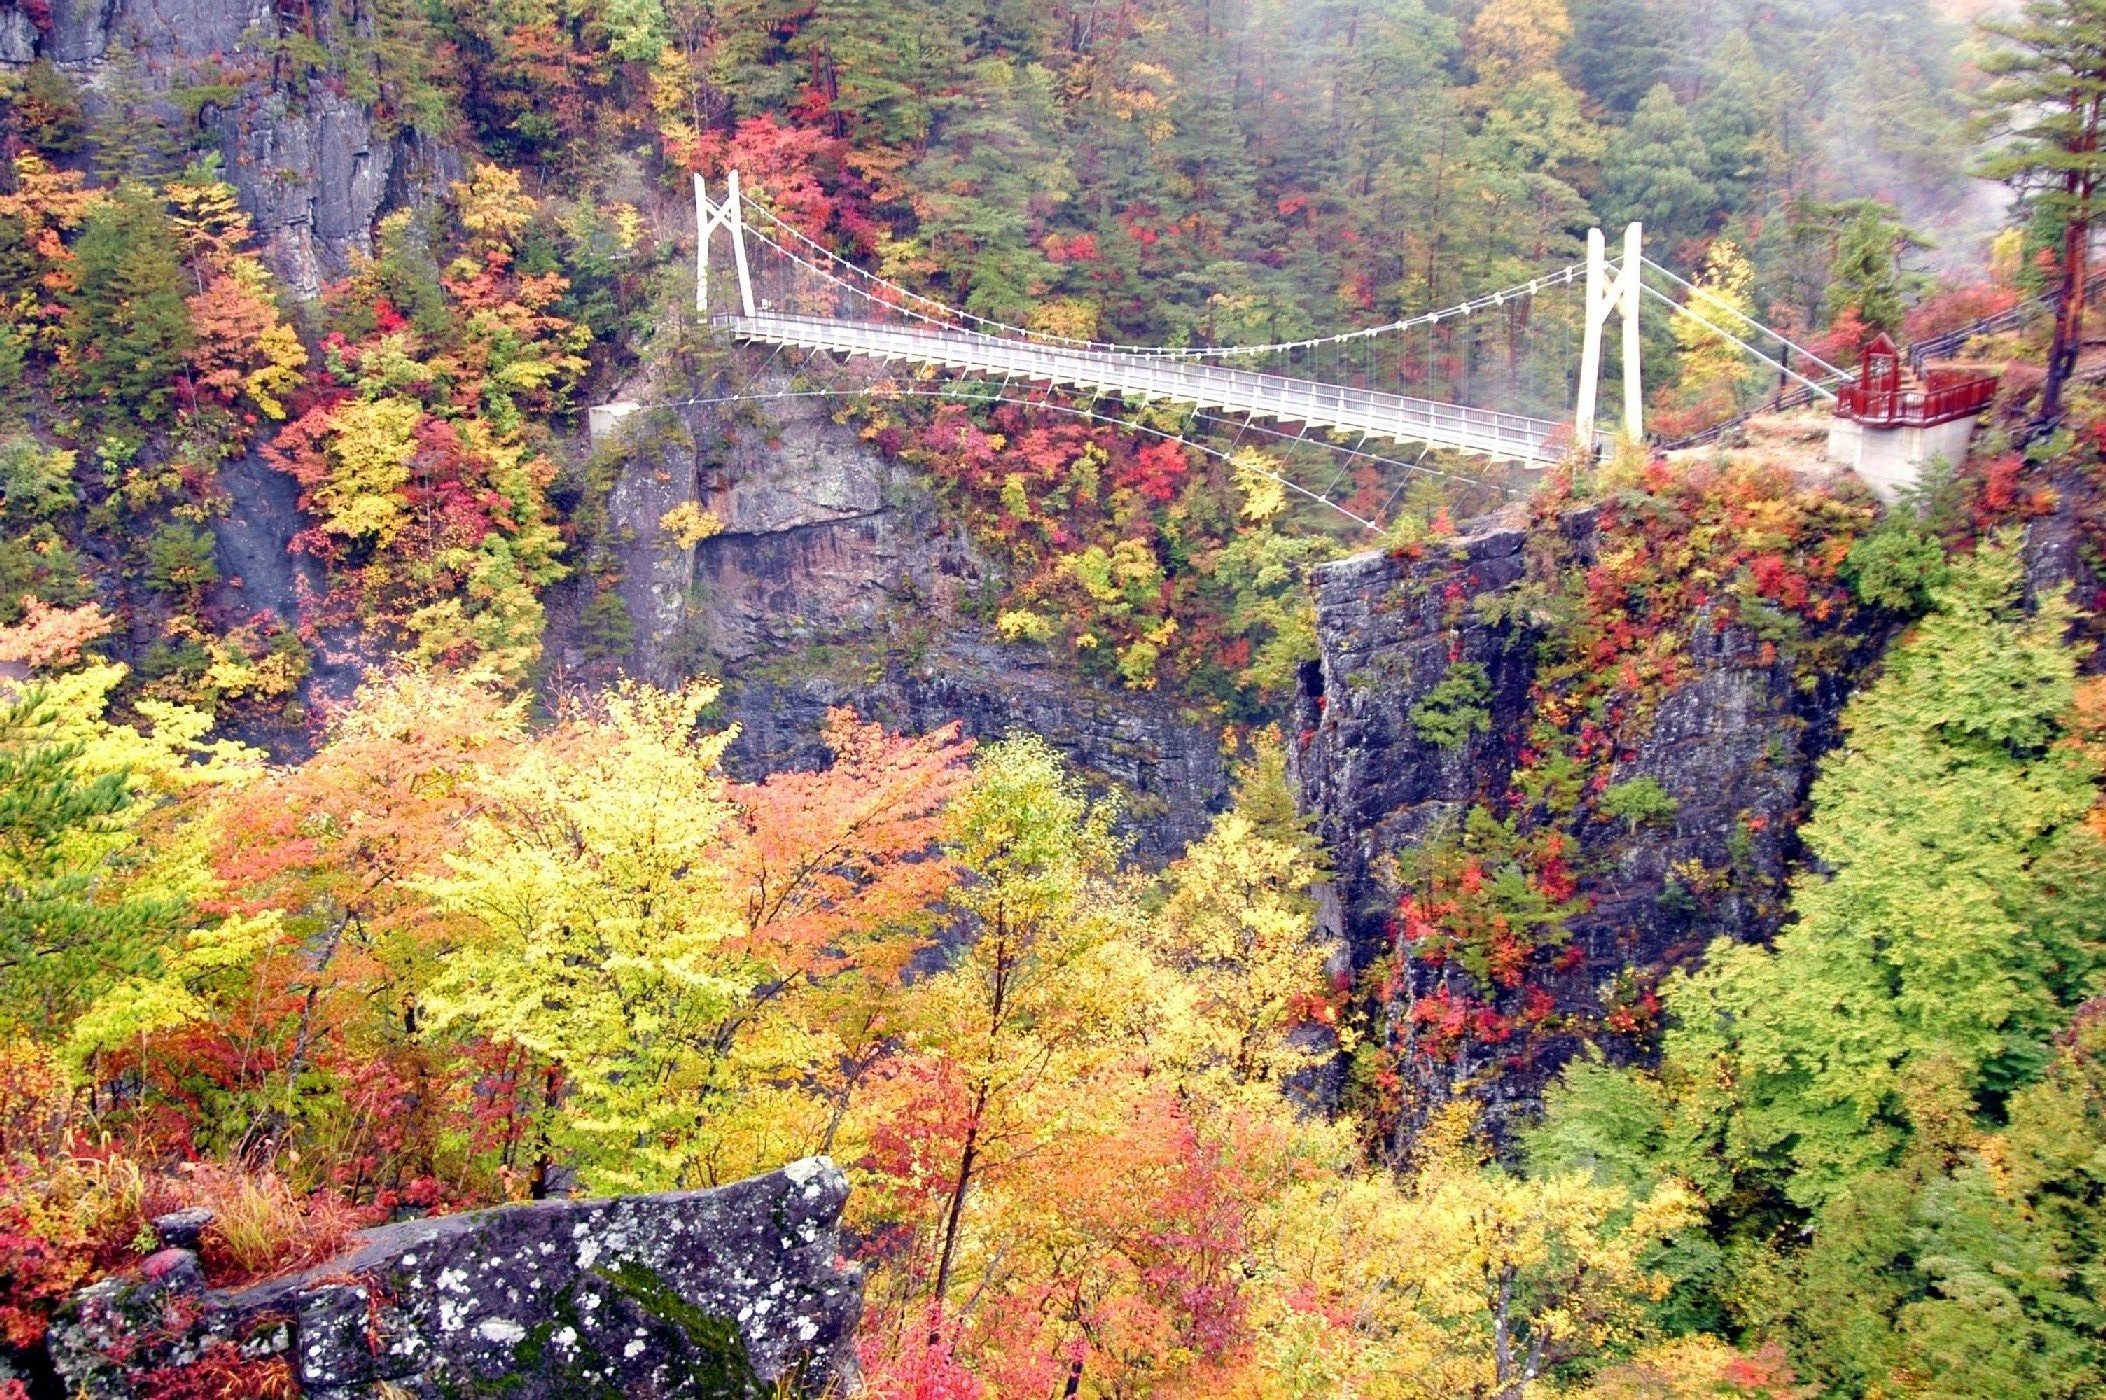 川俣ダム正面の岸壁に架けられた吊橋「渡らっしゃい吊橋」と断崖を遠目から写した写真